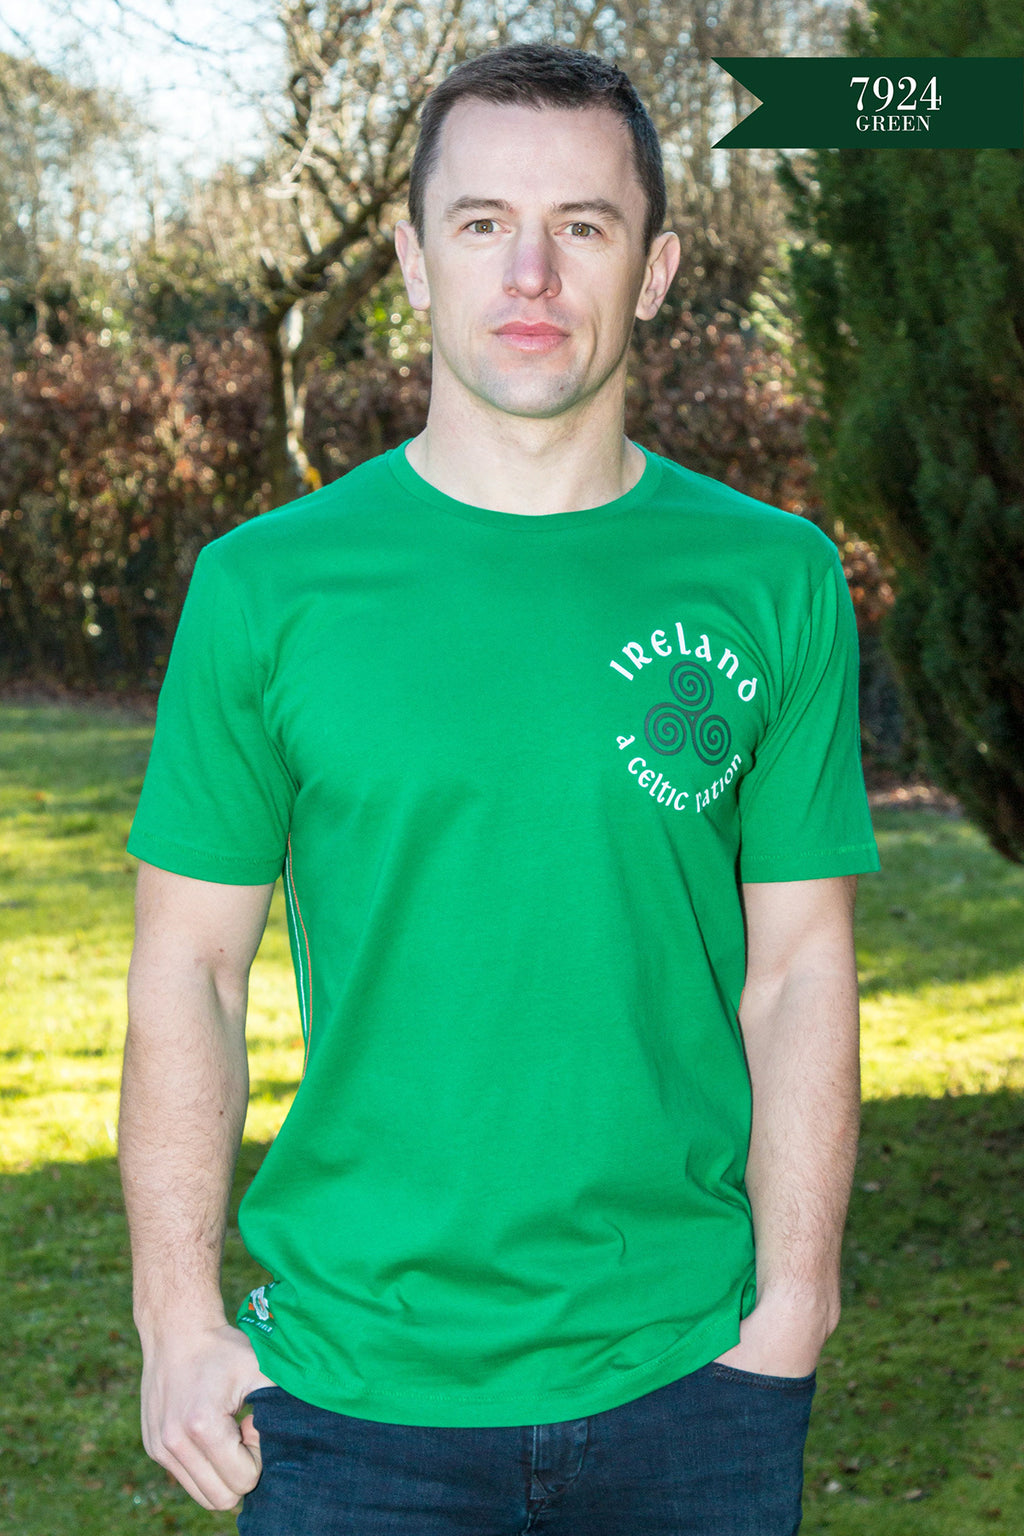 Green Ireland Celtic spiral t-shirt 7924